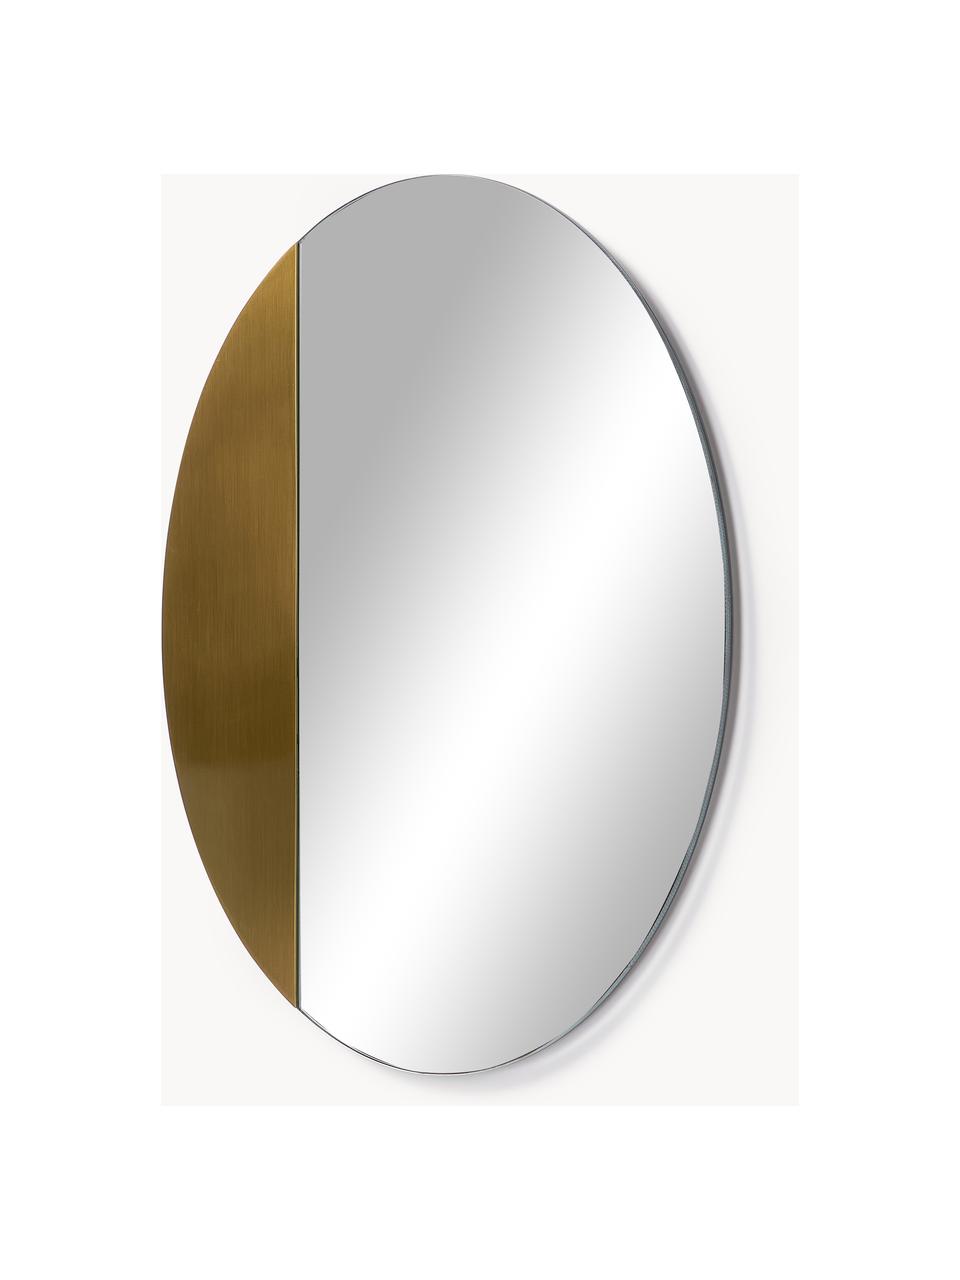 Wandspiegel Enjo mit Dekor, Spiegelfläche: Spiegelglas, Rückseite: Mitteldichte Holzfaserpla, Dekor: Metall, Goldfarben, Ø 55 cm